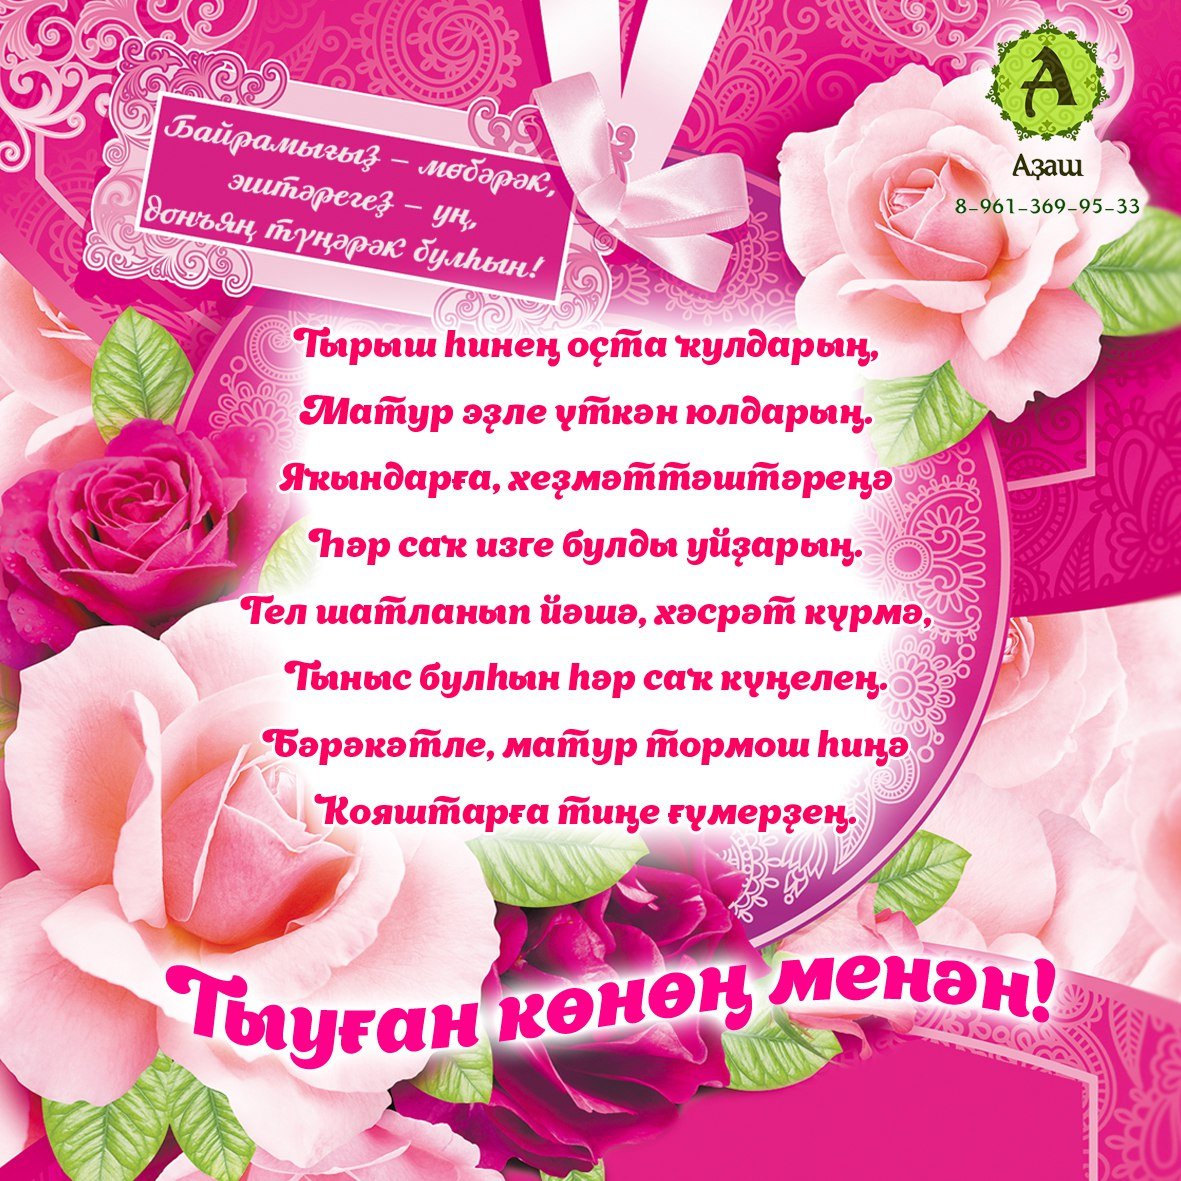 Поздравление на кумыкском языке. Поздравления с днём рождения на башкирском. Поздравление с юбилеем на башкирском. Поздравления с днём рождения на башкирском языке. Поздравления с днём рождения маме на башкирском языке.